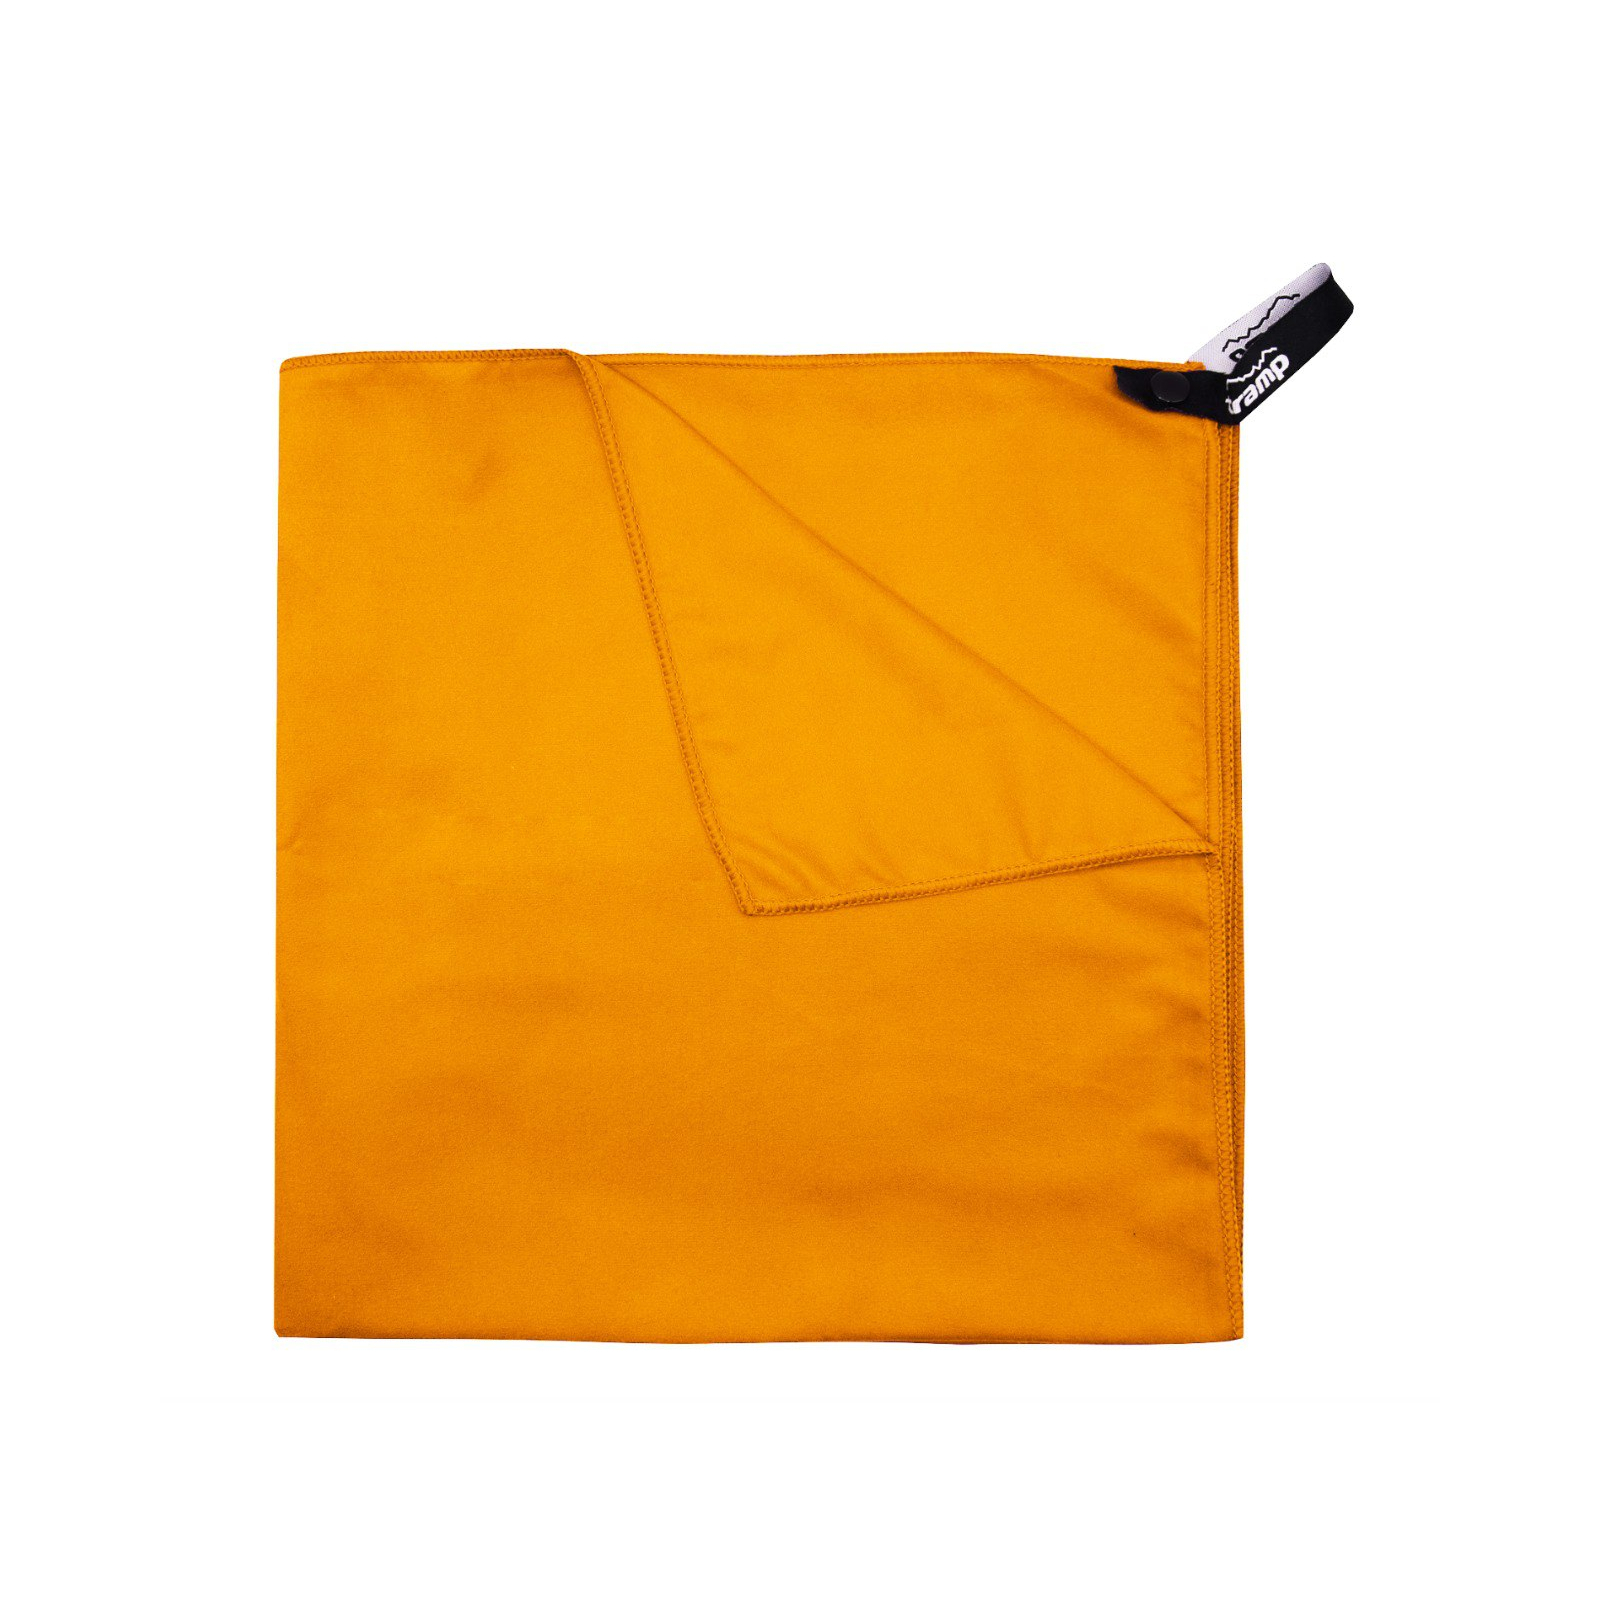 Полотенце Tramp з мікрофібри в чохлі Pocket Towel 60х120 L Grey (UTRA-161-L-grey) изображение 5